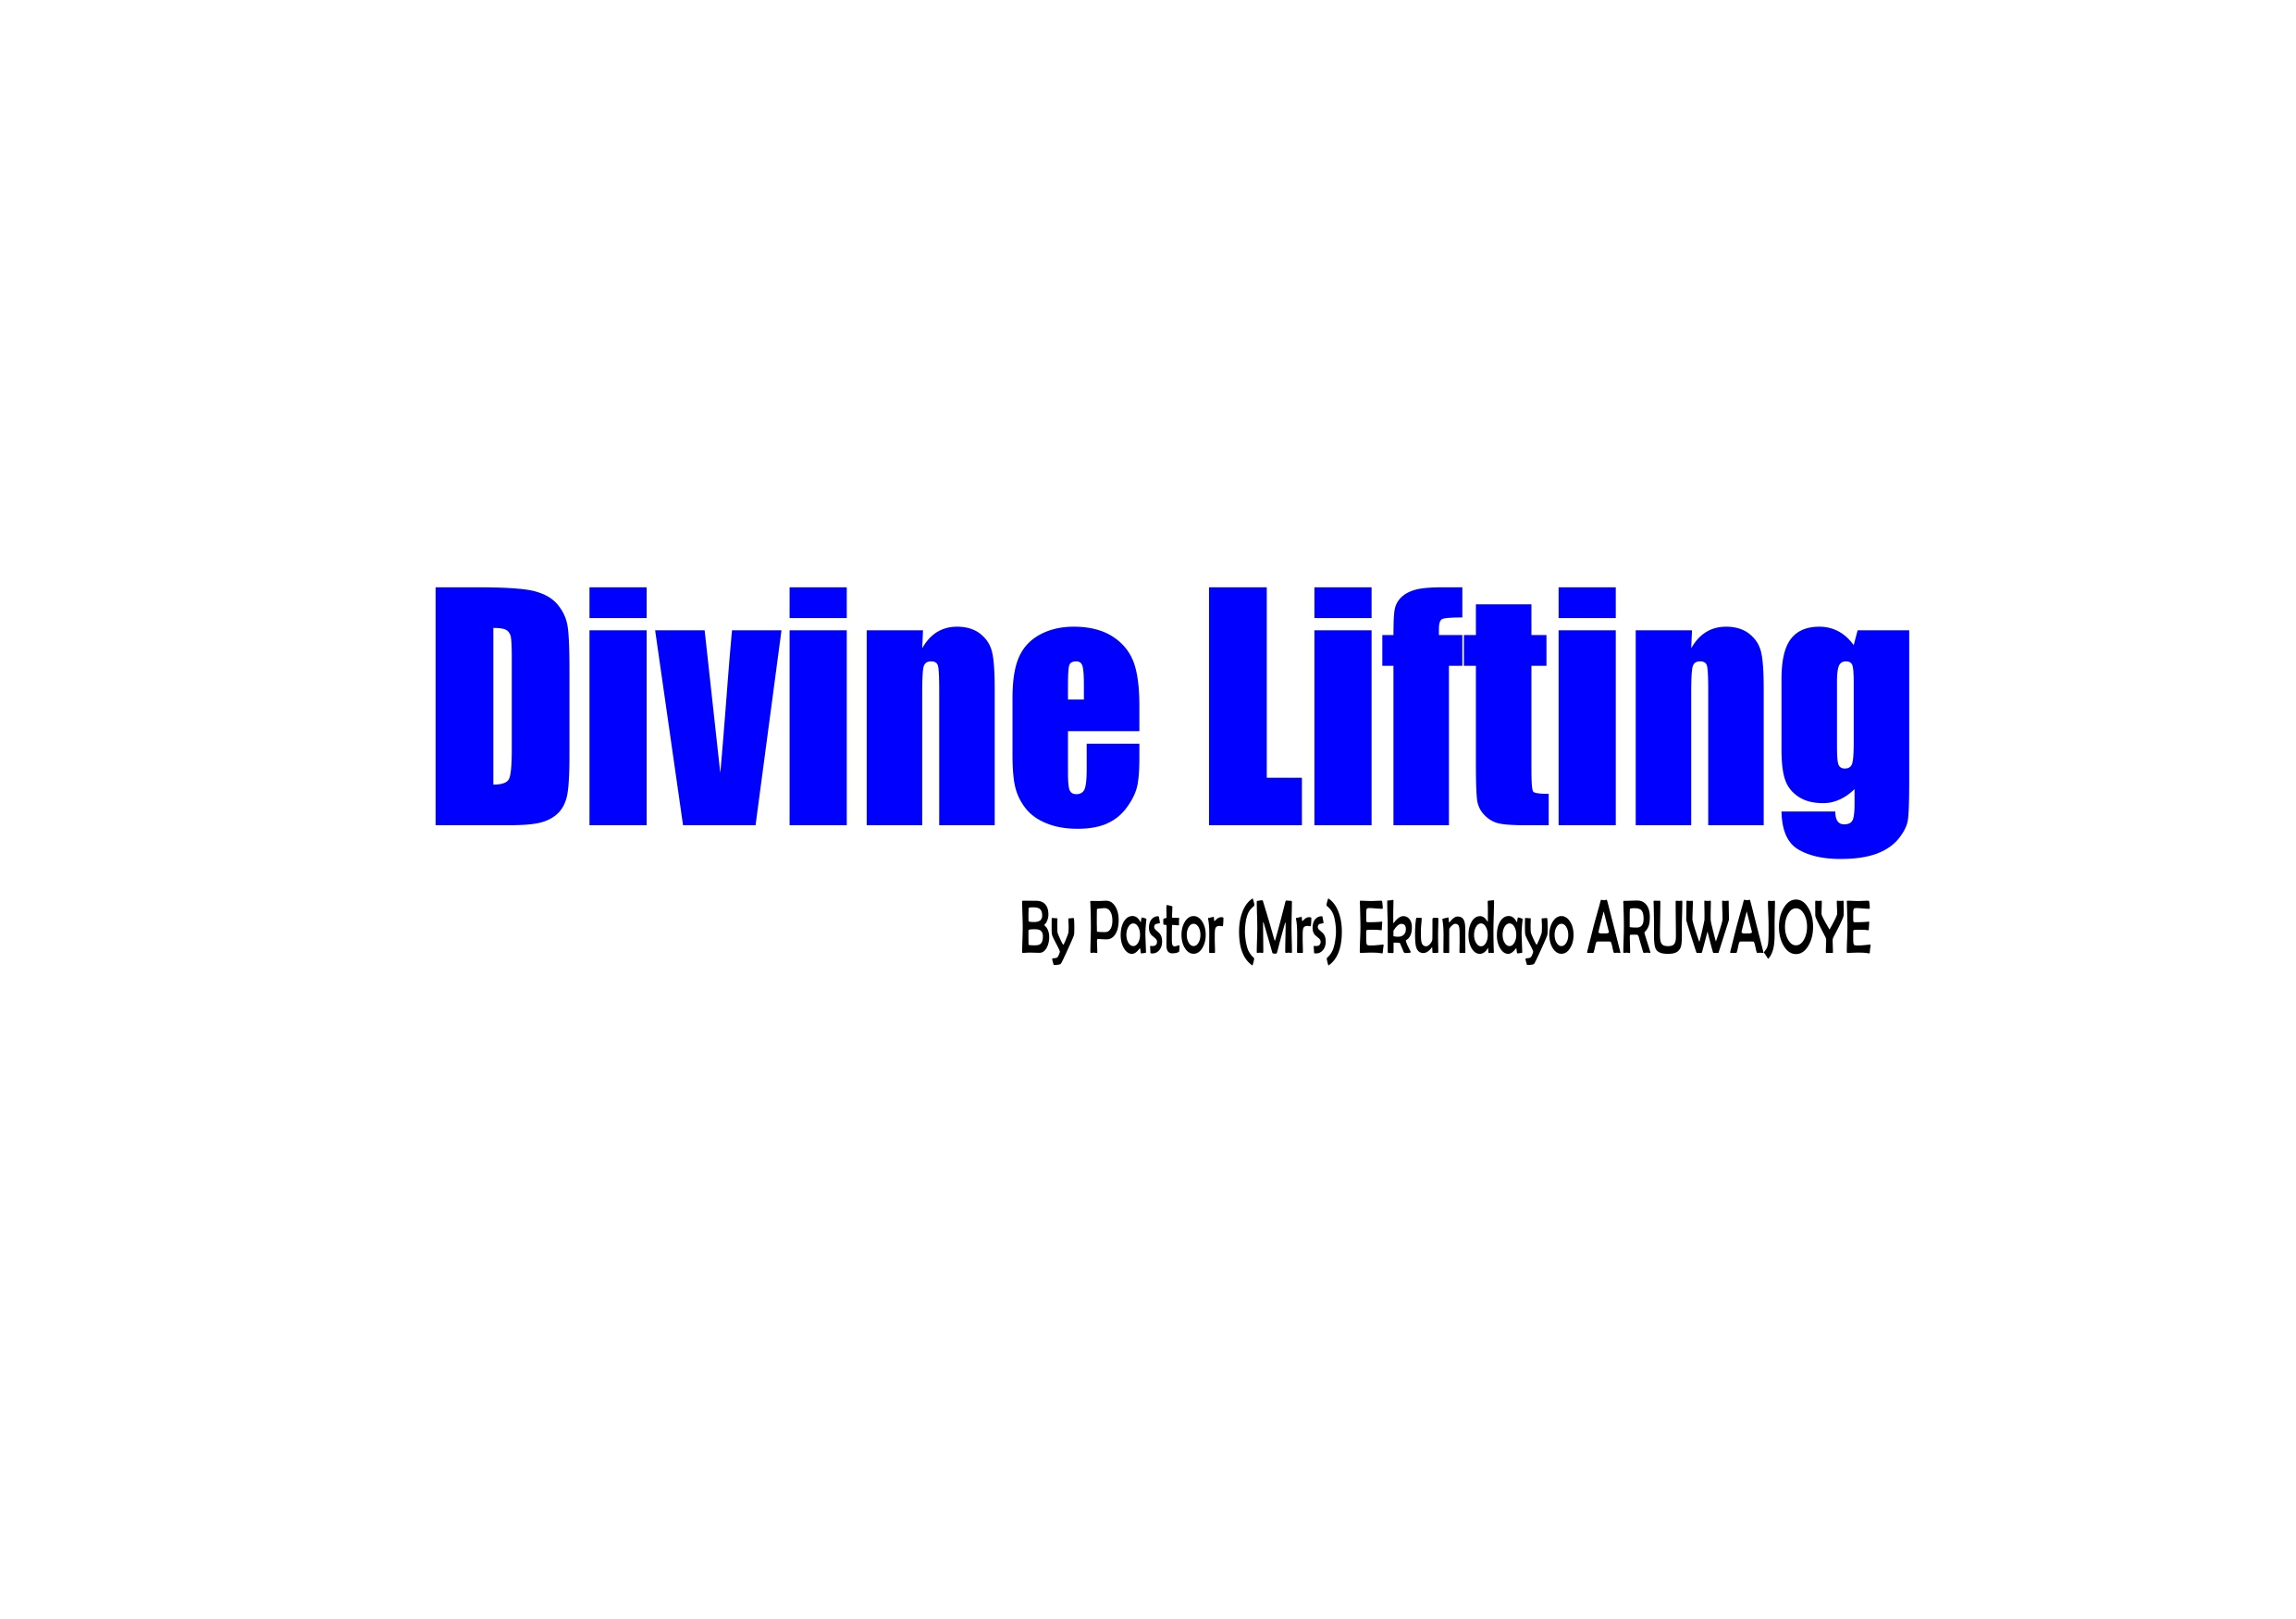 Divine Lifting, by Pastor (Mrs) Ekundayo Aruwajoye